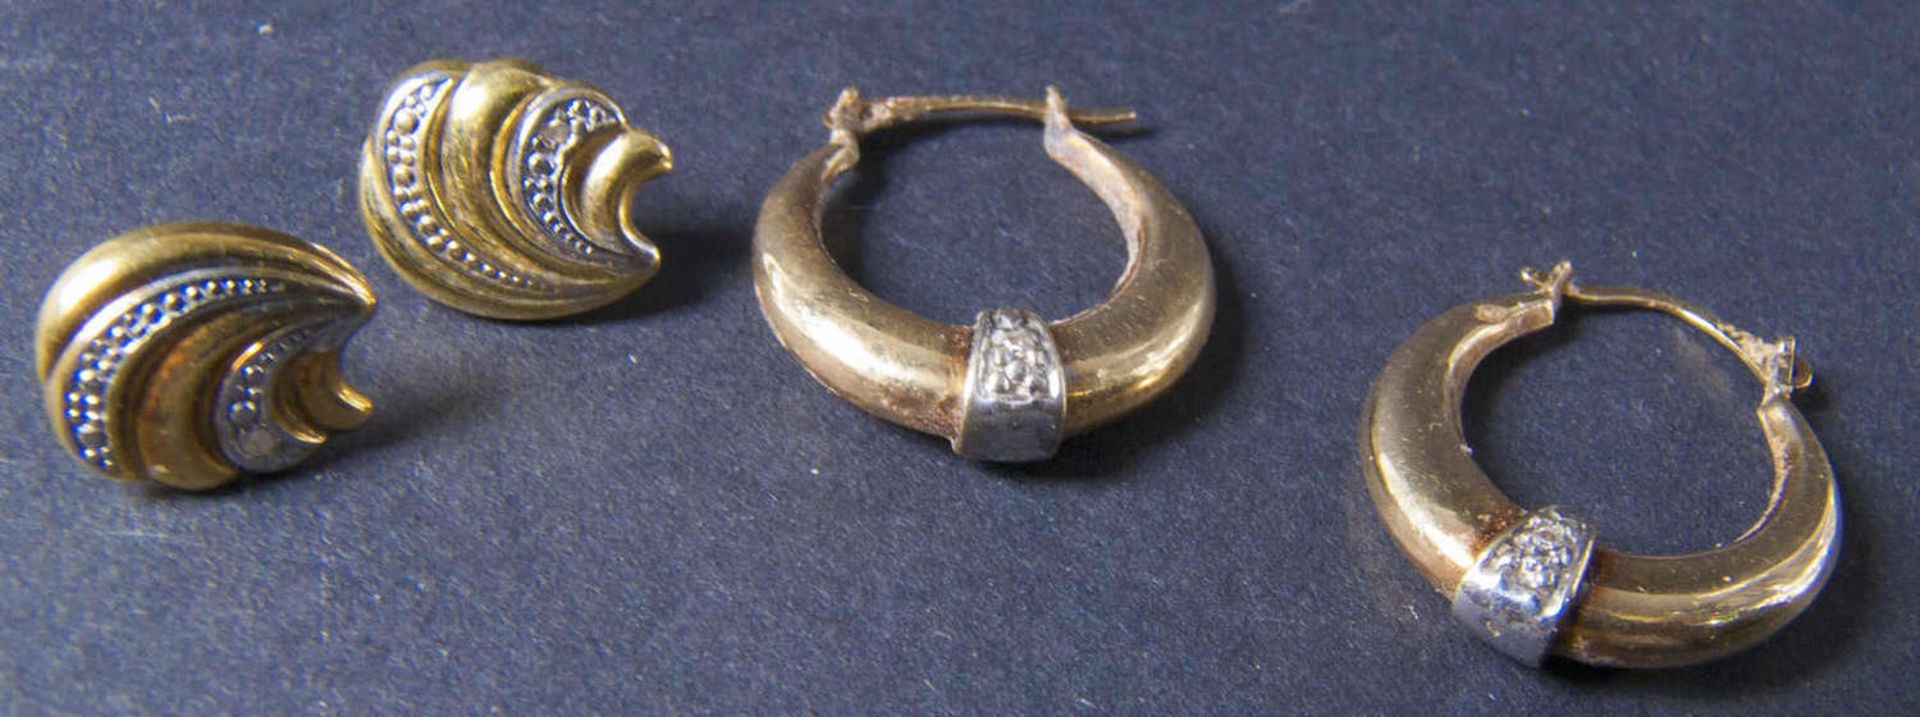 Konvolut Ohrschmuck, bestehend aus einem Paar Ohrringen und einem Paar Ohrsteckern. Beide in Bicolor